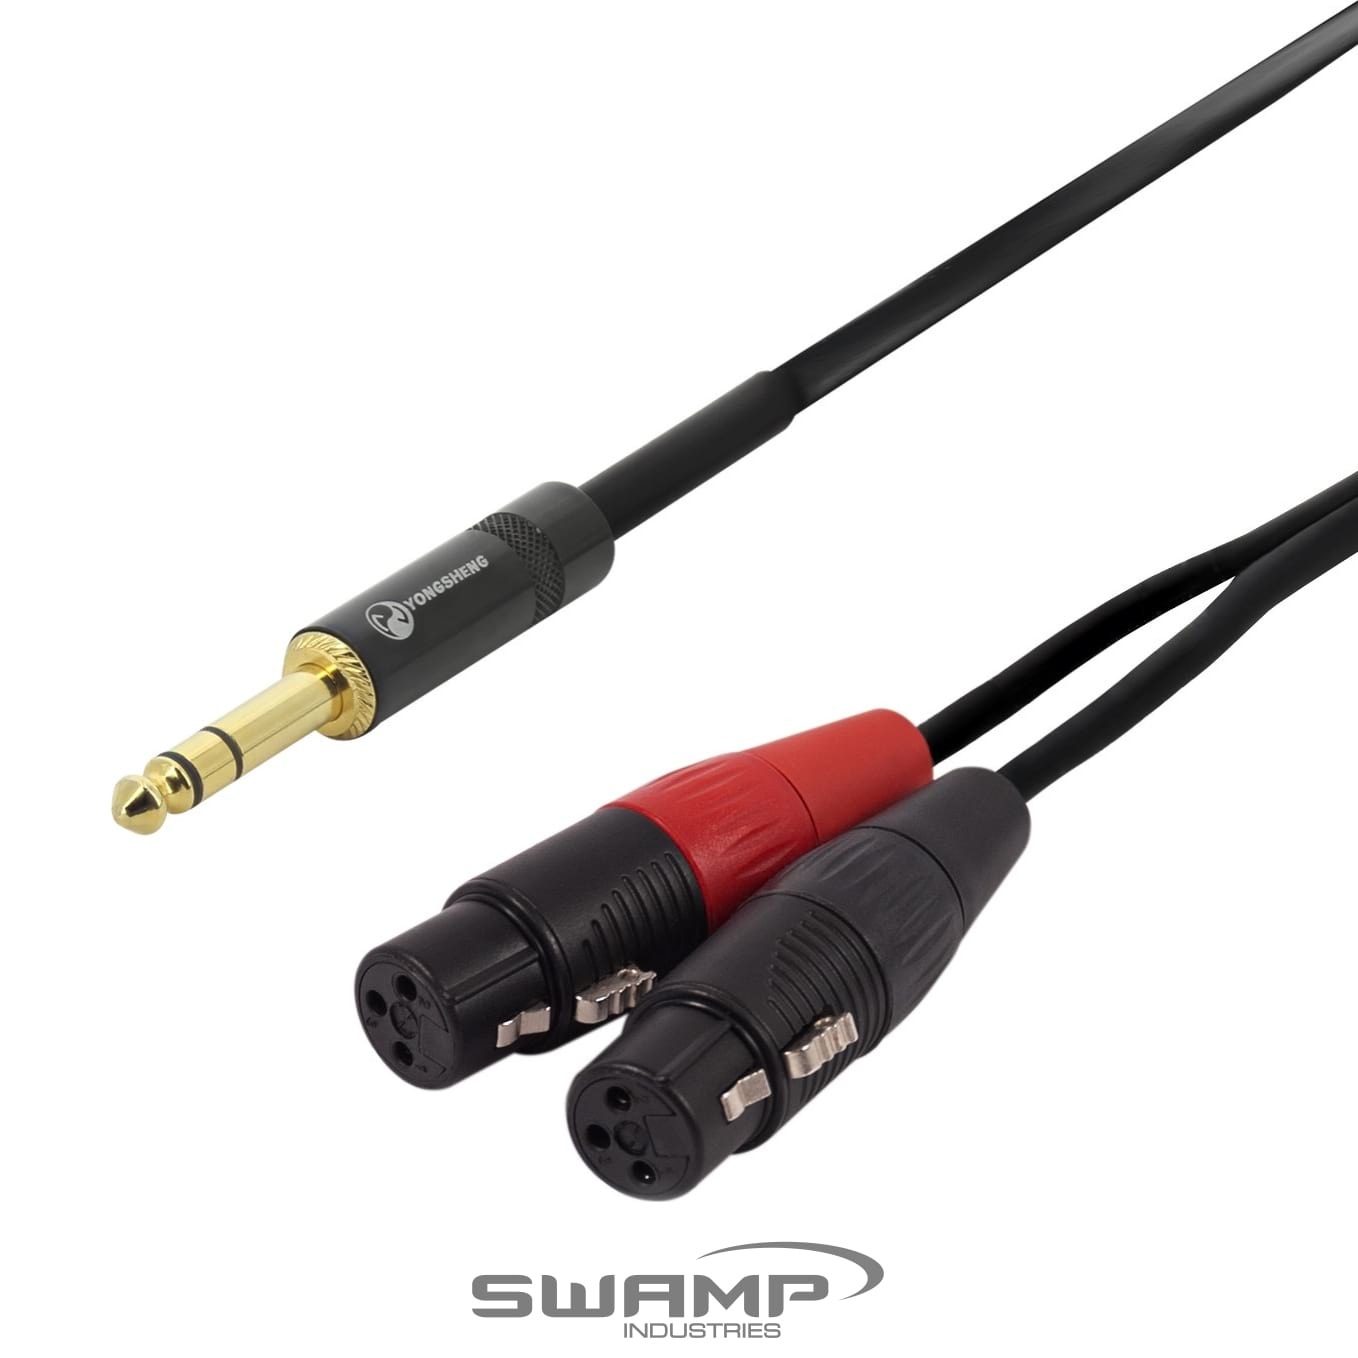 Dual XLR(m) to 3.5mm AUX Minijack TRS - Stereo Signal Headphone Splitter